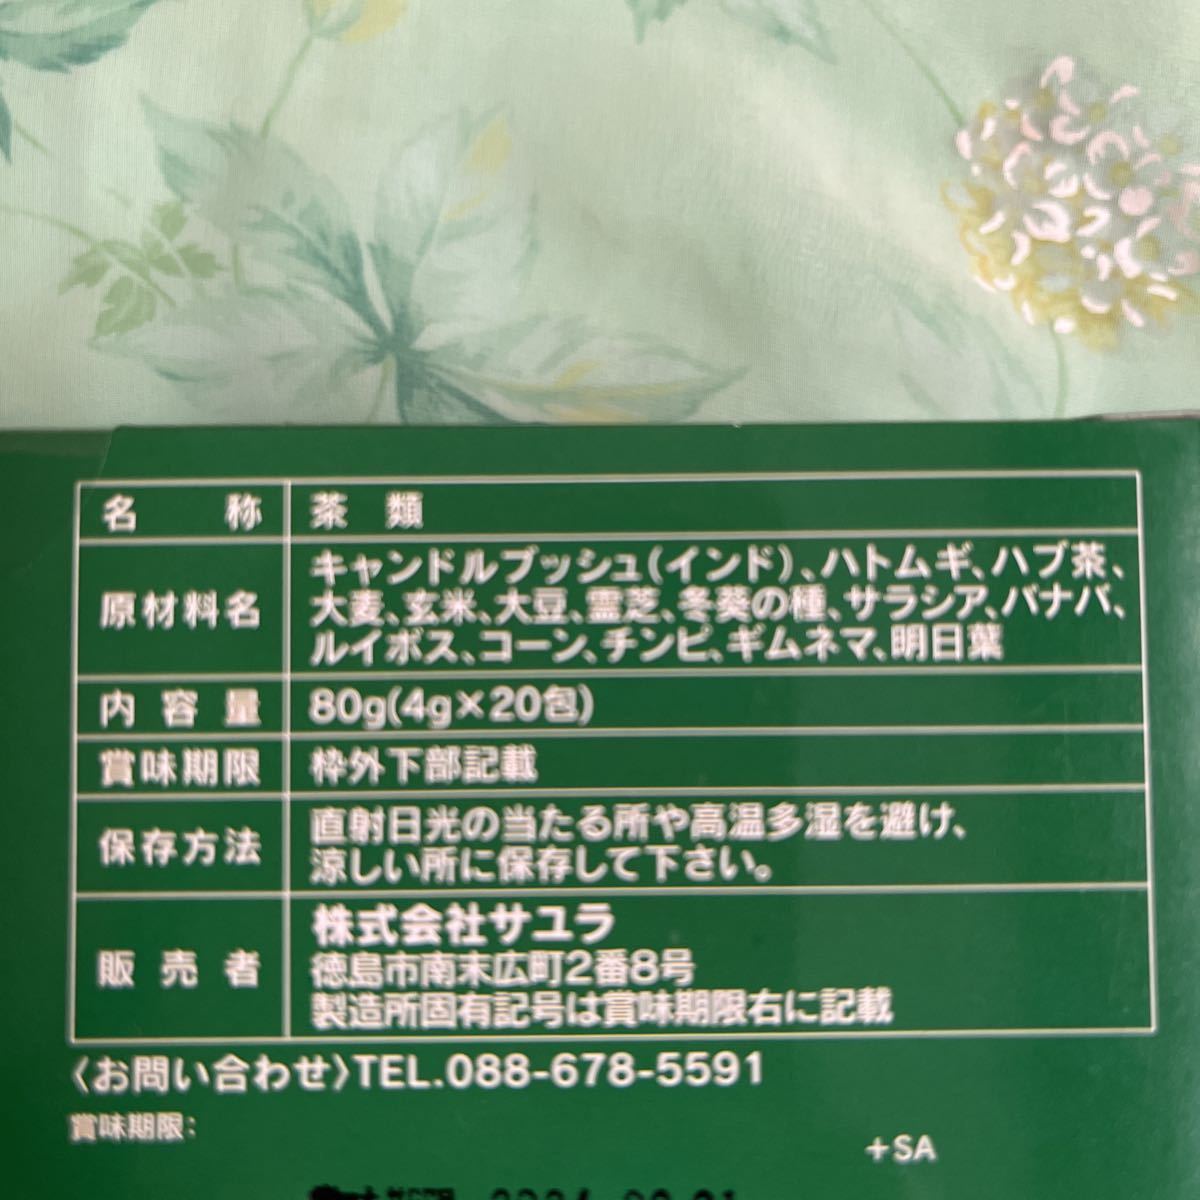 プレミアム減肥茶 4箱 ティーパック 4g×20包 サユラ シャンロワール_画像3